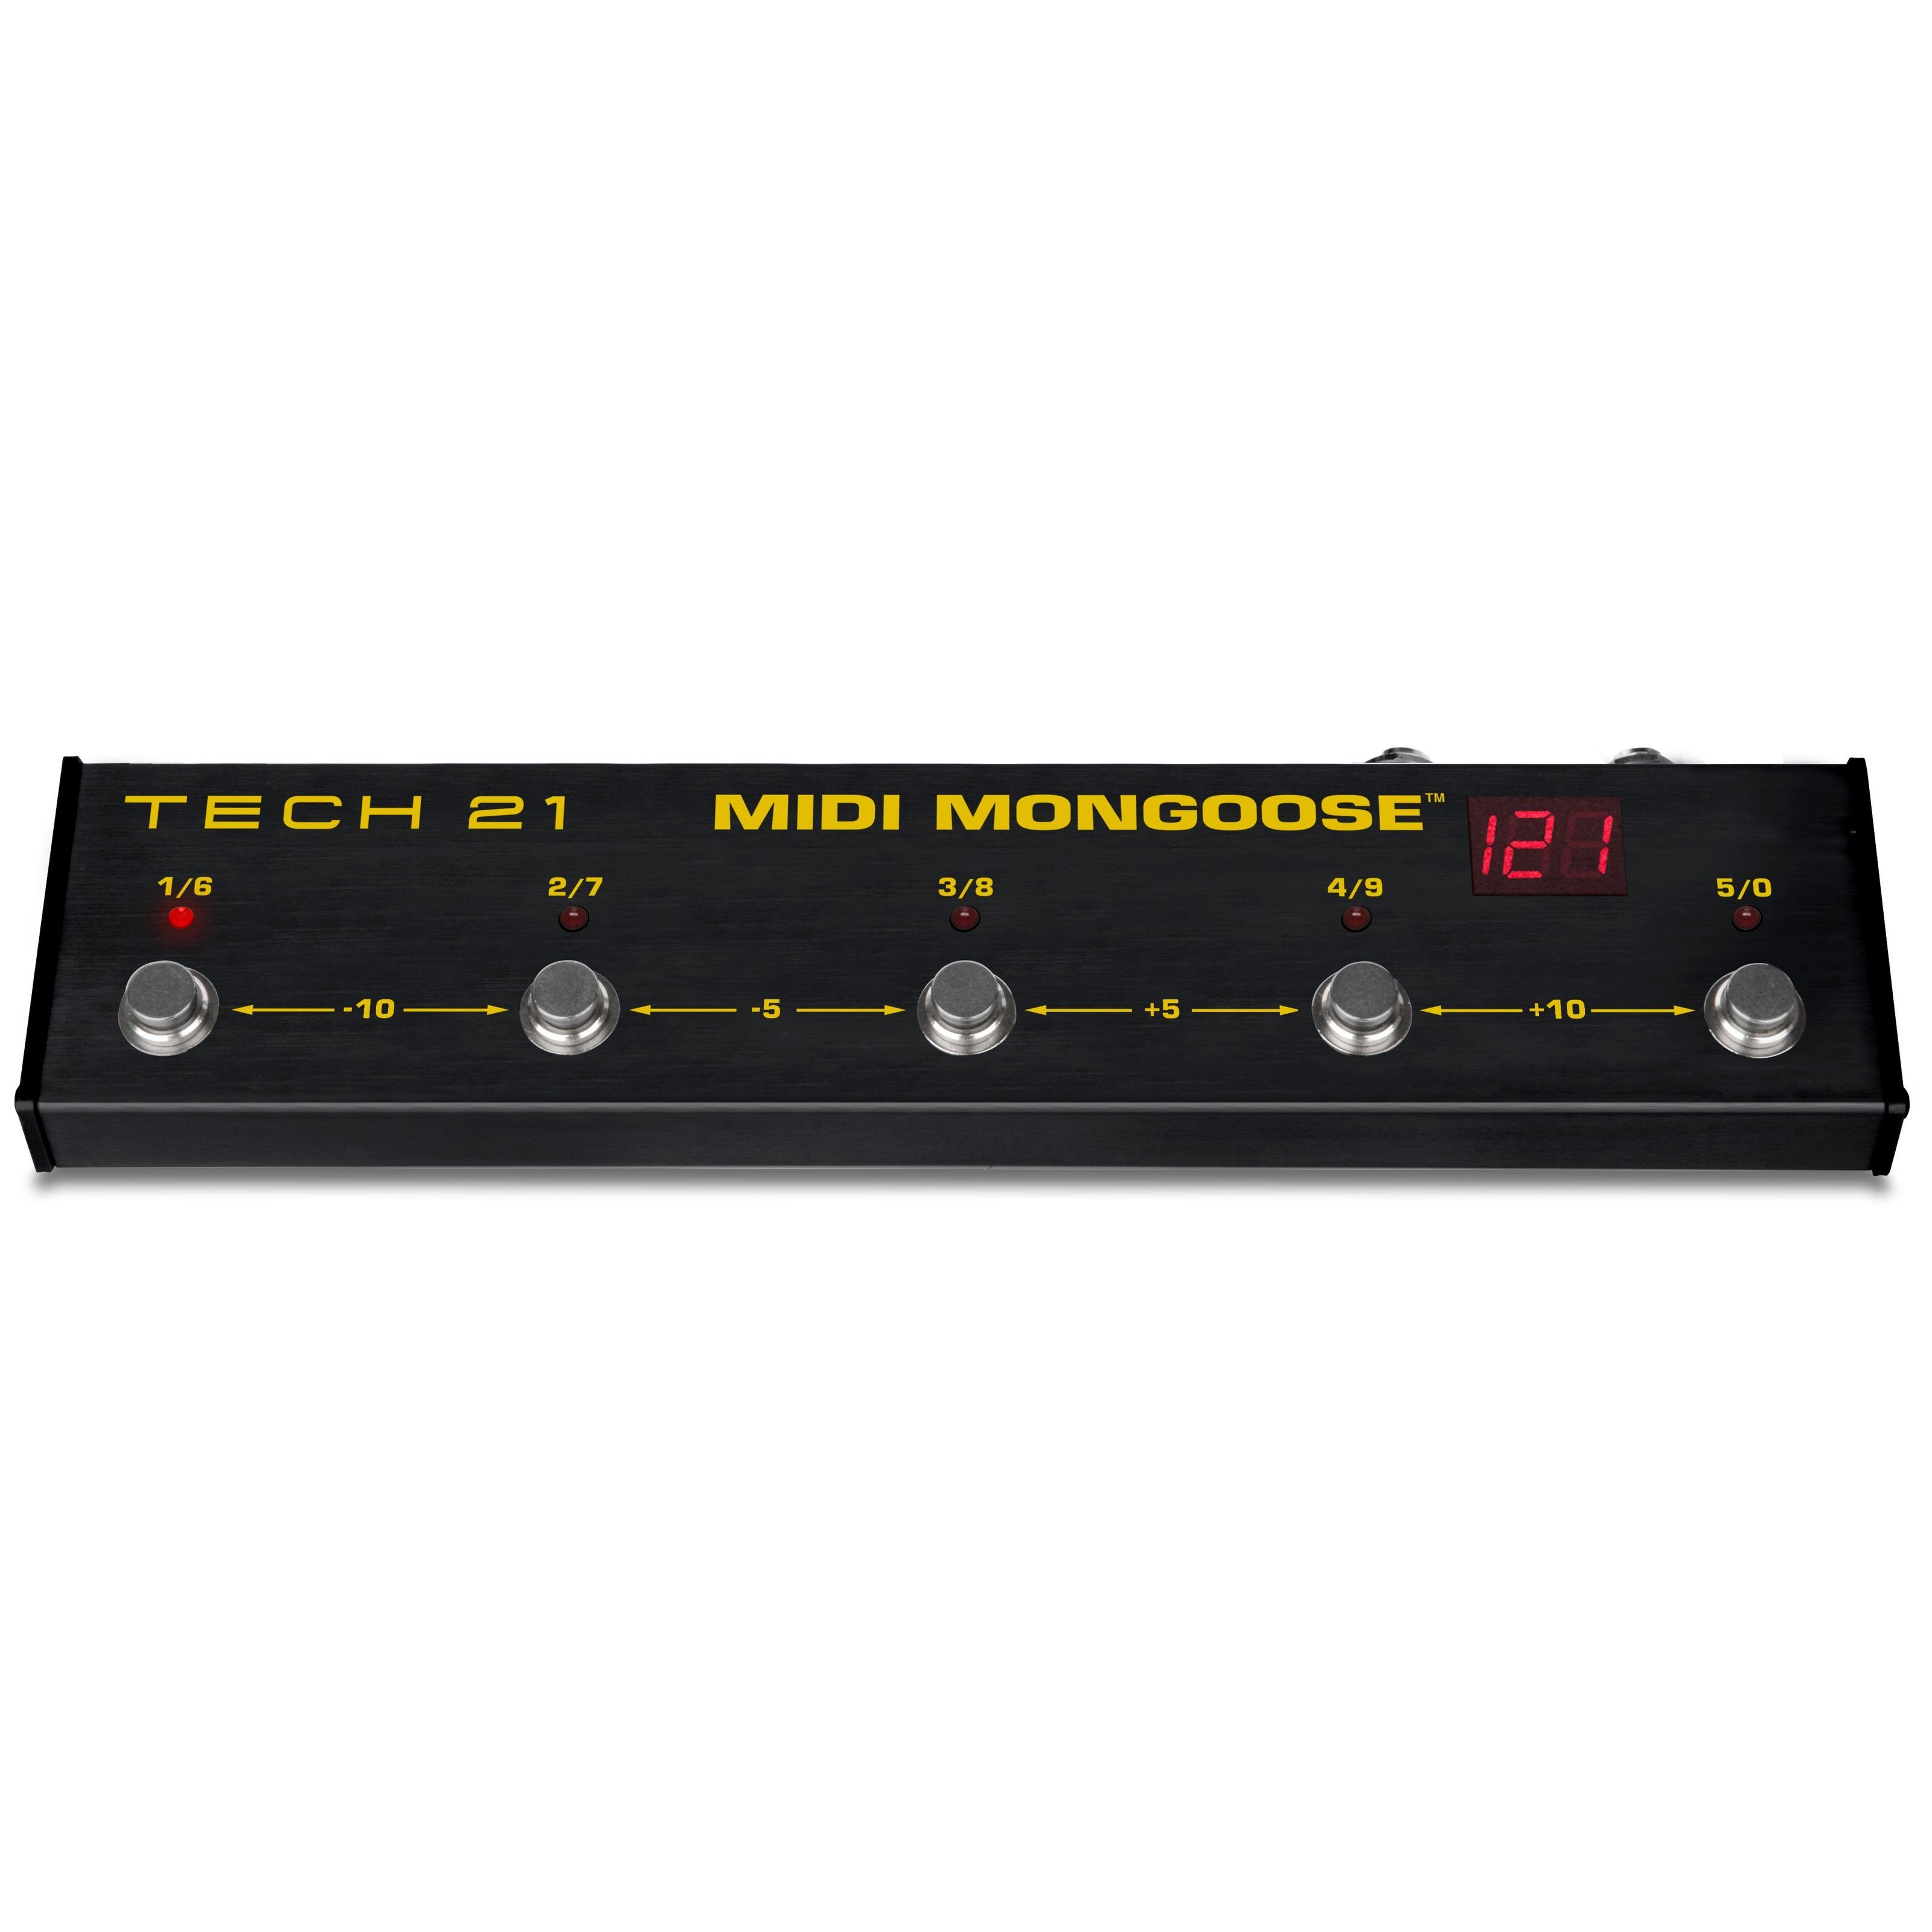 Fußschalter Mongoose Verstärker Gitarrenverstärker) MIDI für 21 (MIDI - Tech